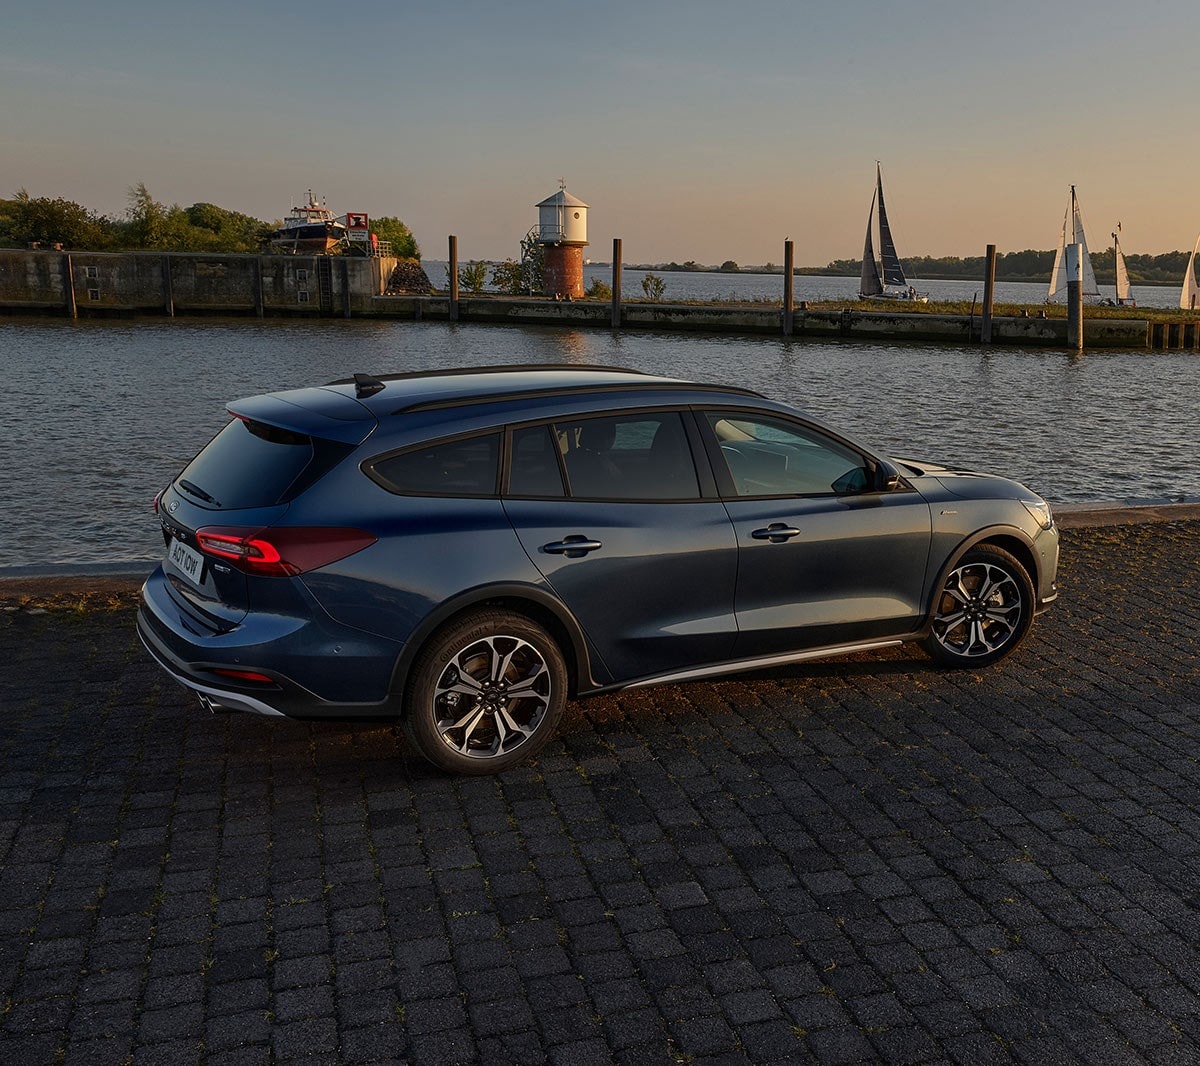 Ford Focus in Blau. Dreiviertelansicht, vor einem See im Sonnenuntergang parkend.